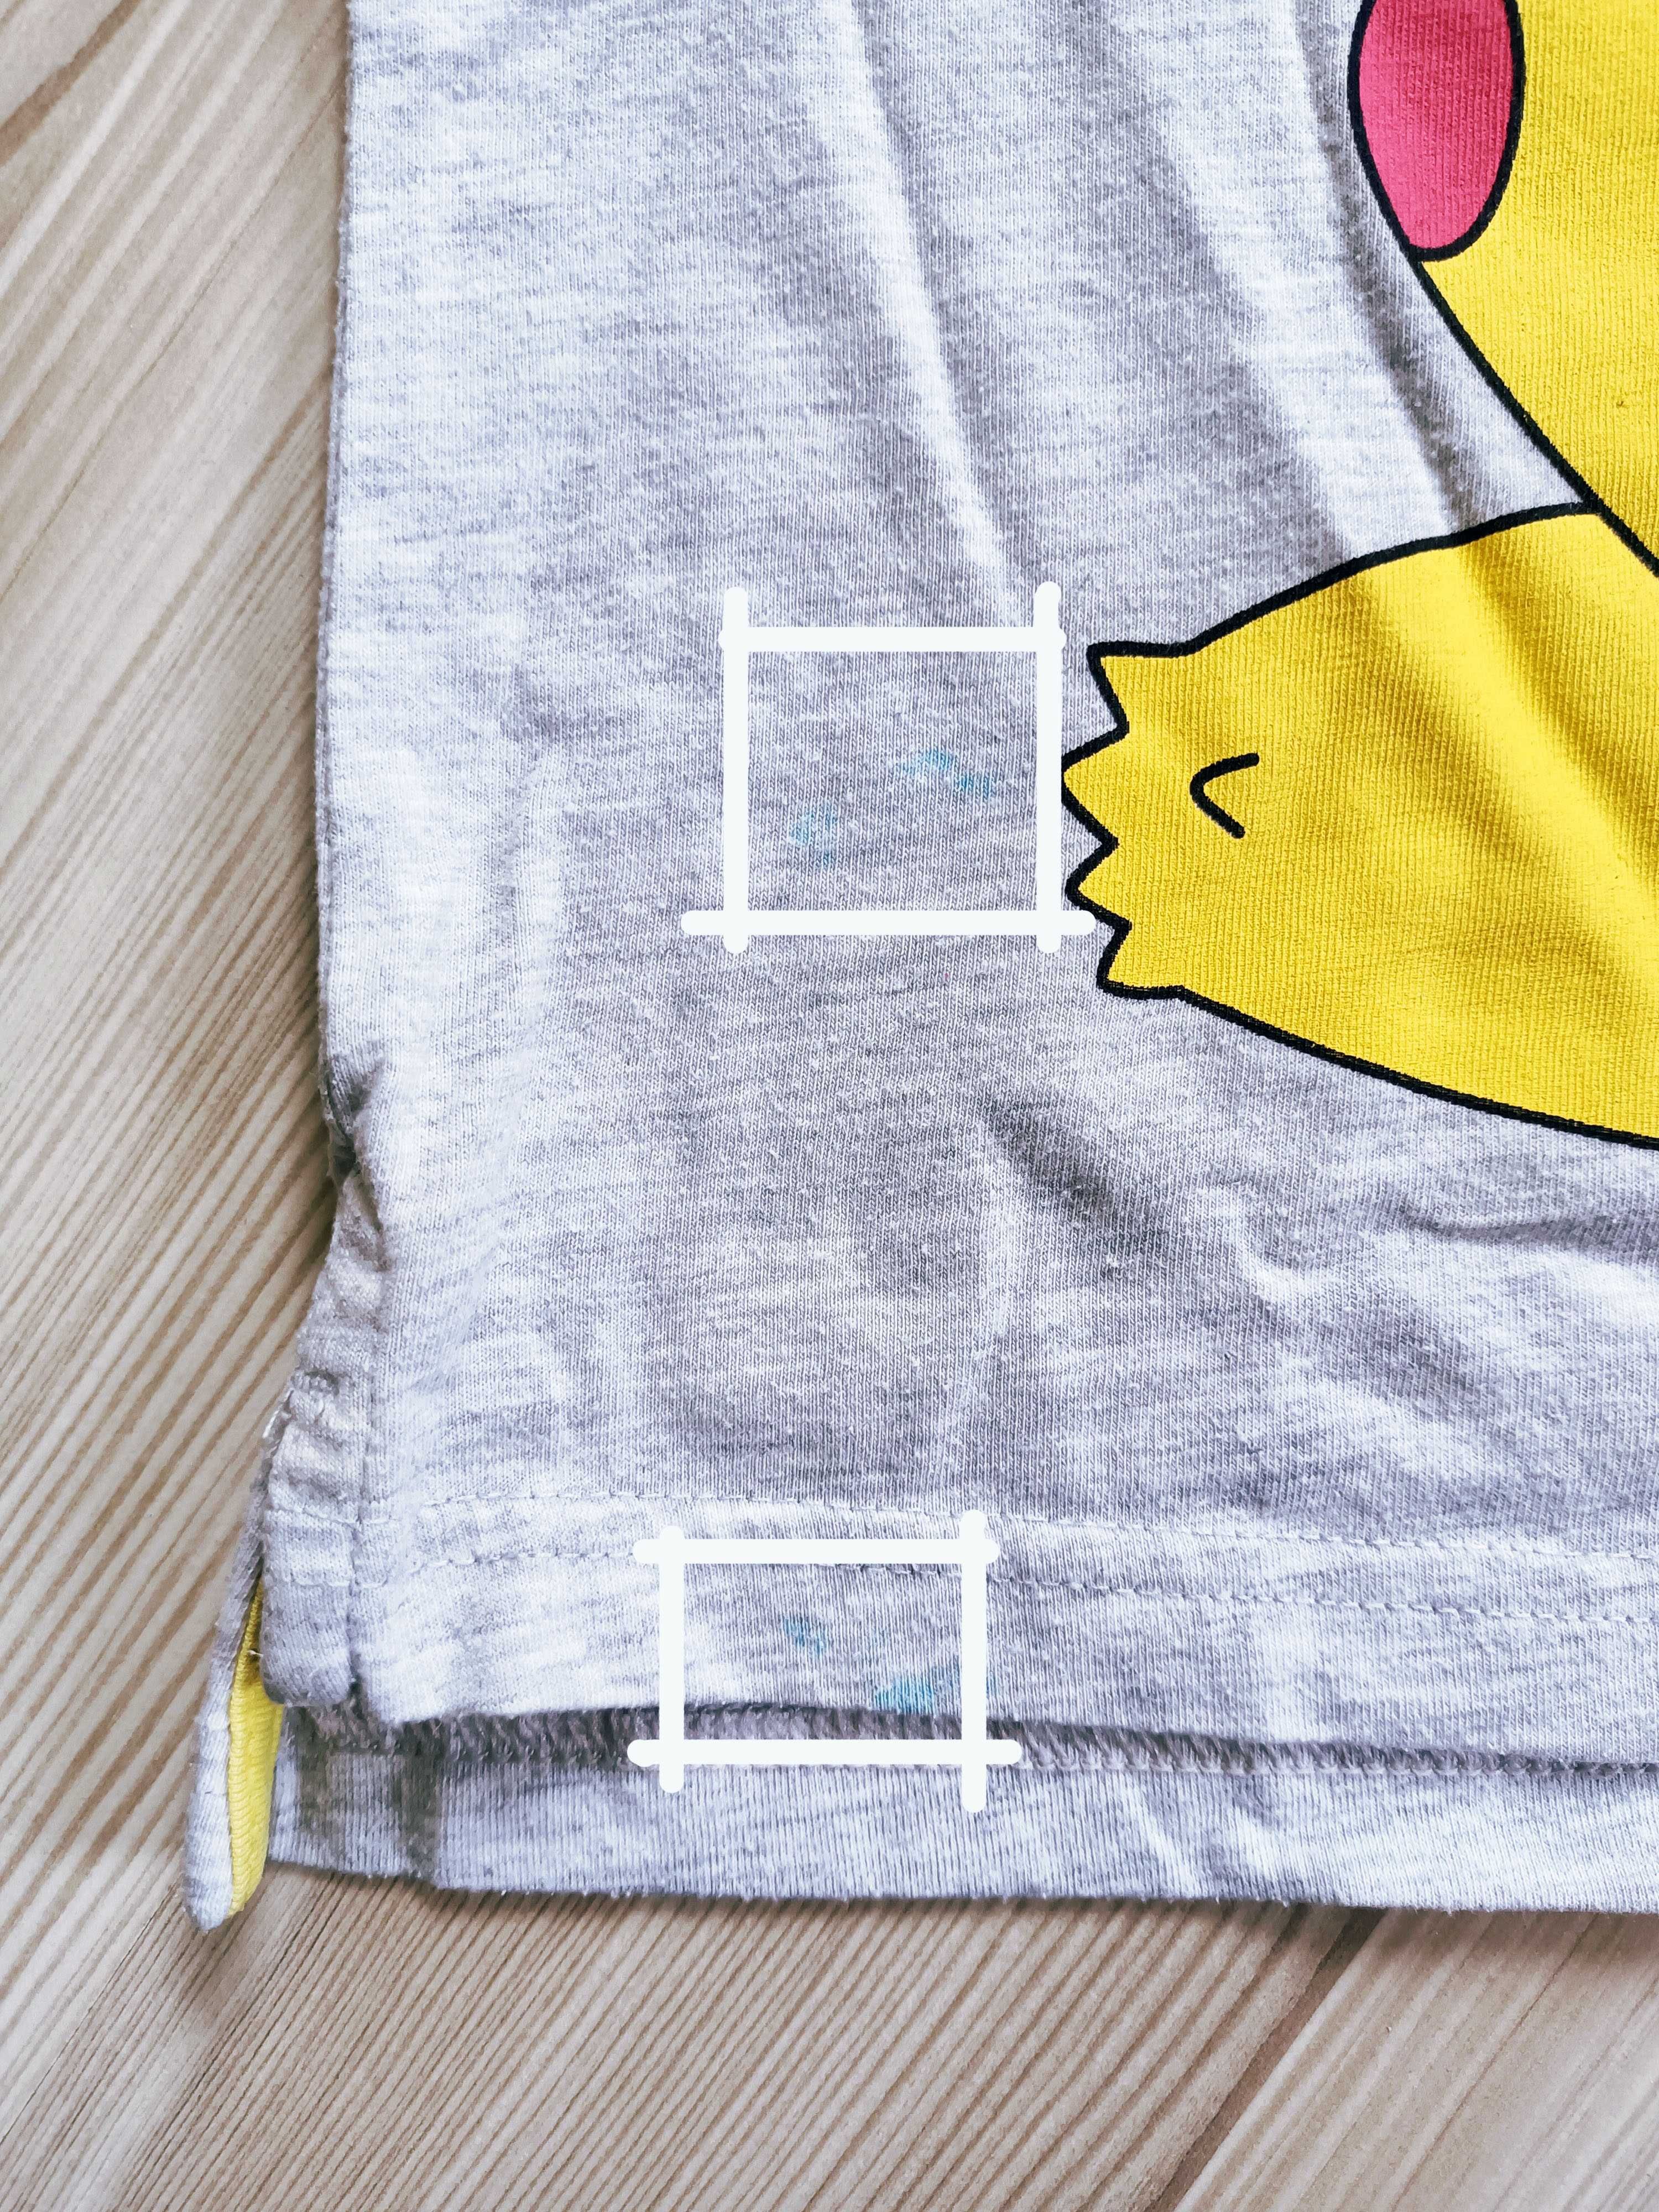 T-shirt Pokemon Pikachu - wiek 2-3 lata, rozmiar ok. 92 cm